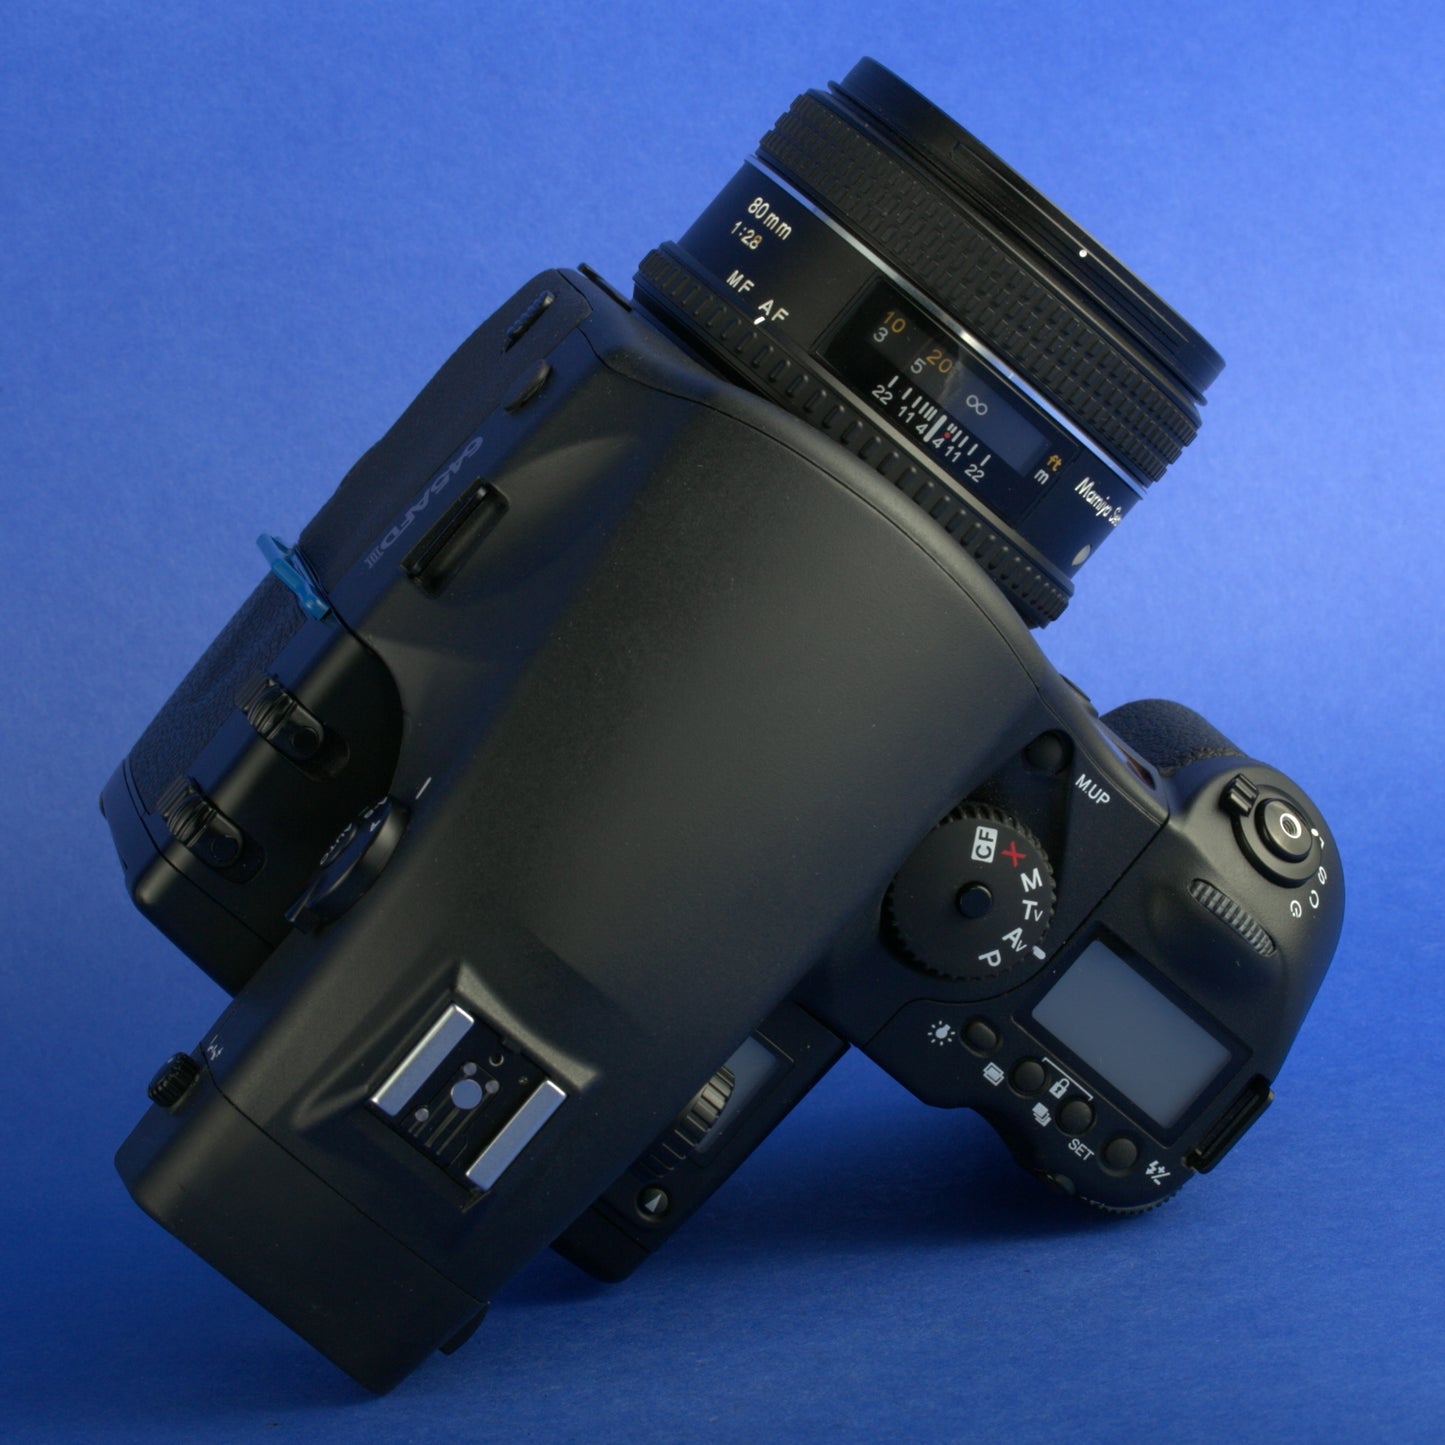 Mamiya 645 AFD II Medium Format Camera Kit with 80mm 2.8 Sekor D Lens